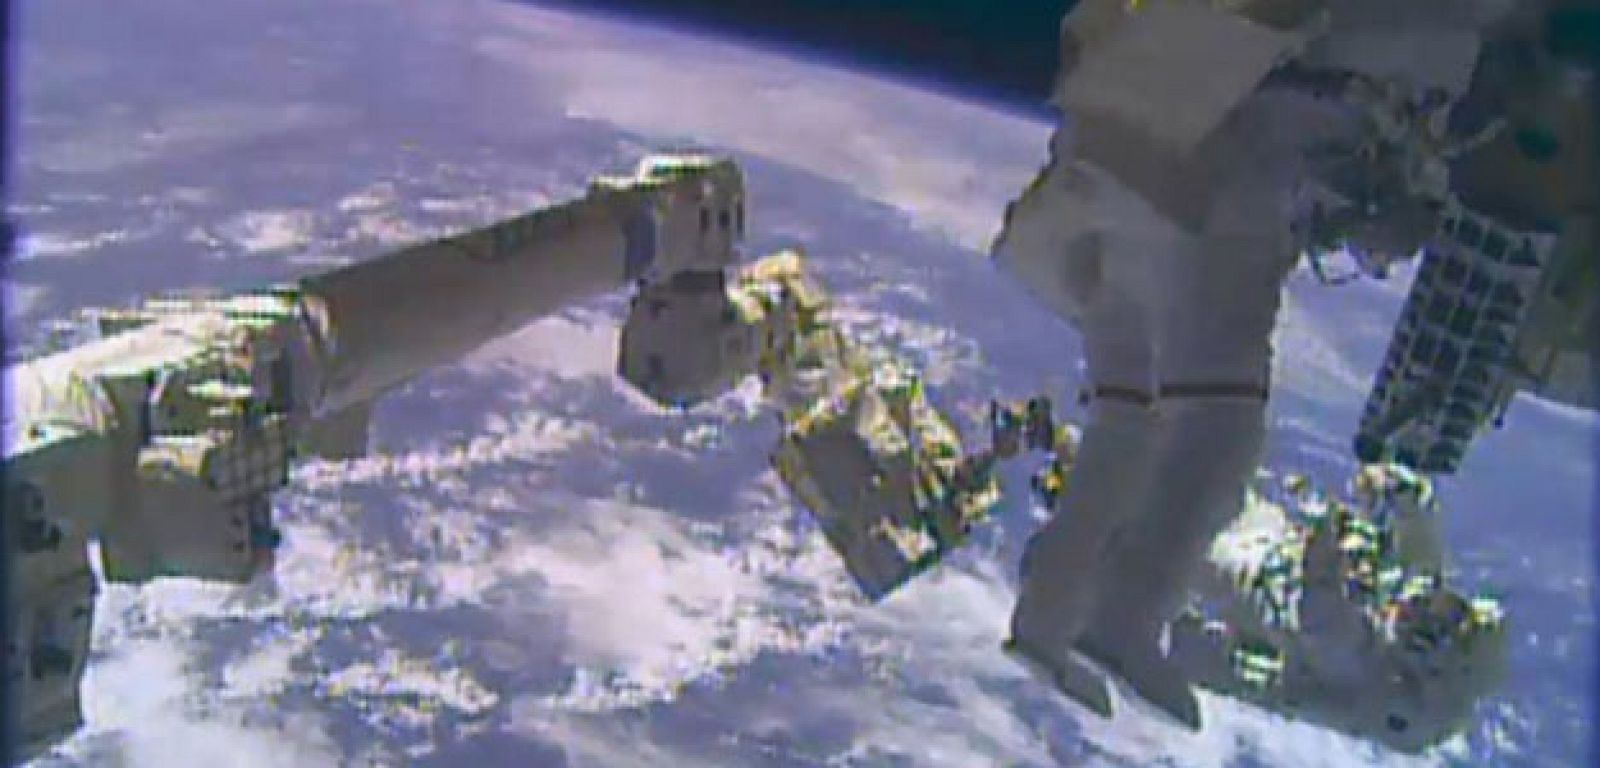 Los astronautas Mike Hopkins y Rick Mastracchio salen de la Estación Espacial Internacional